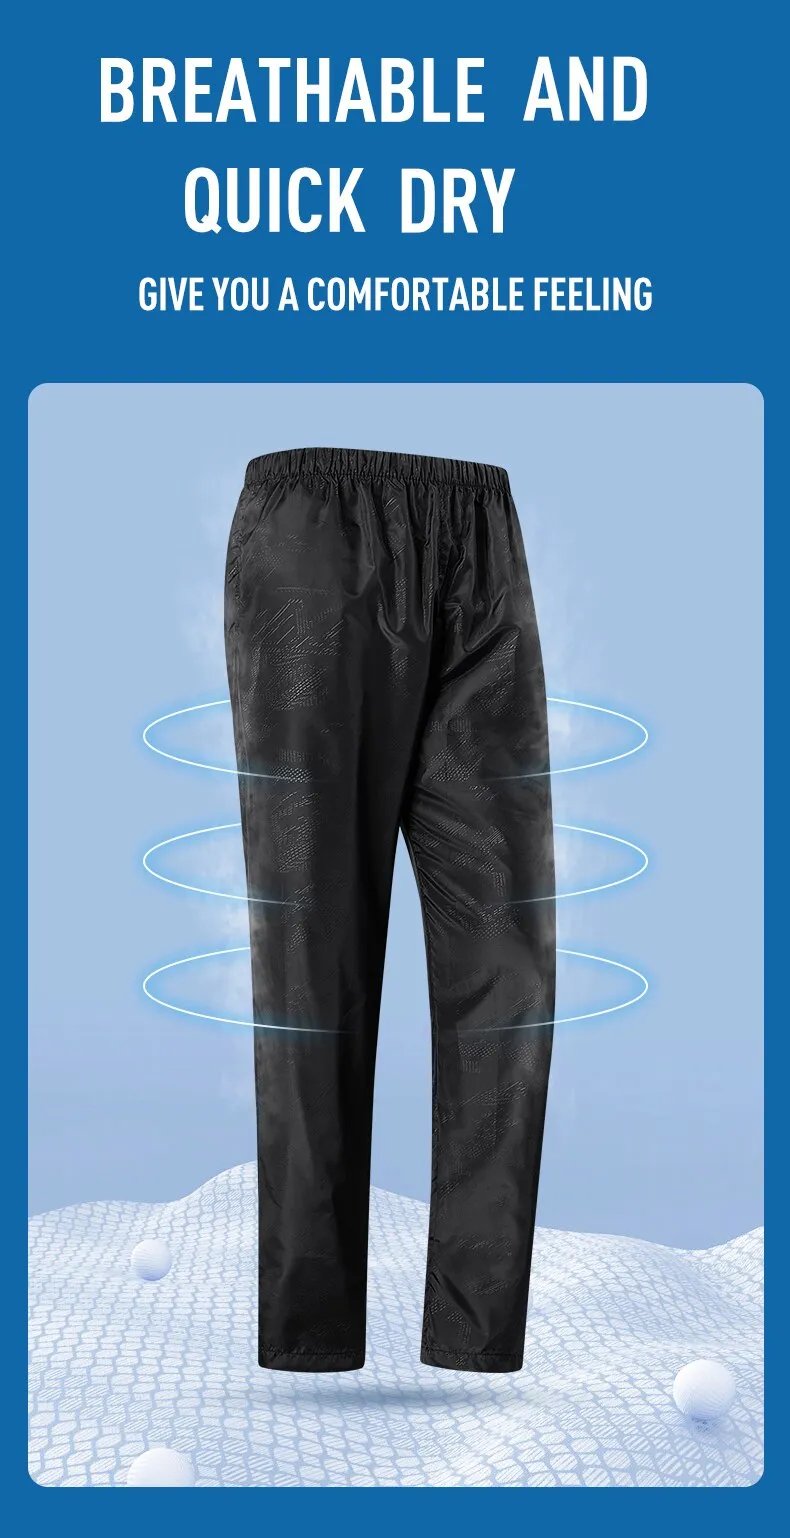 LNGXO-pantalones de senderismo para hombre y mujer, pantalones impermeables para exteriores, Unisex, escalada, Camping, deportes, secado rápido, montaña, lluvia, Anti UV